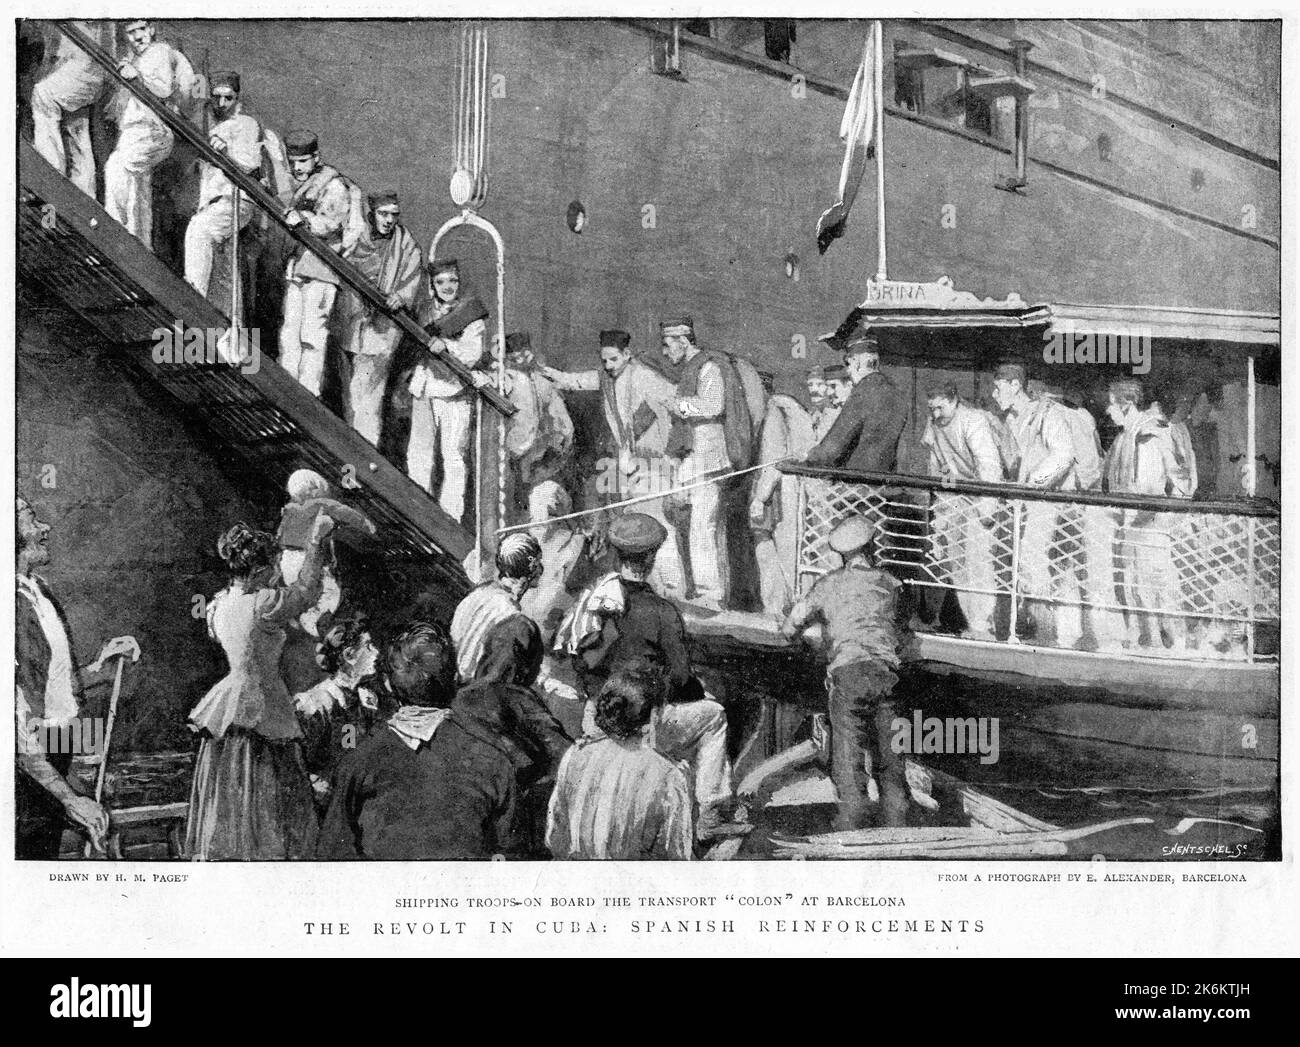 Truppen begeben sich zur Revolte in Kuba - spanische Verstärkung auf den Transport Colon in Barcelona. Aus der Graphic Zeitung, 1896 Stockfoto